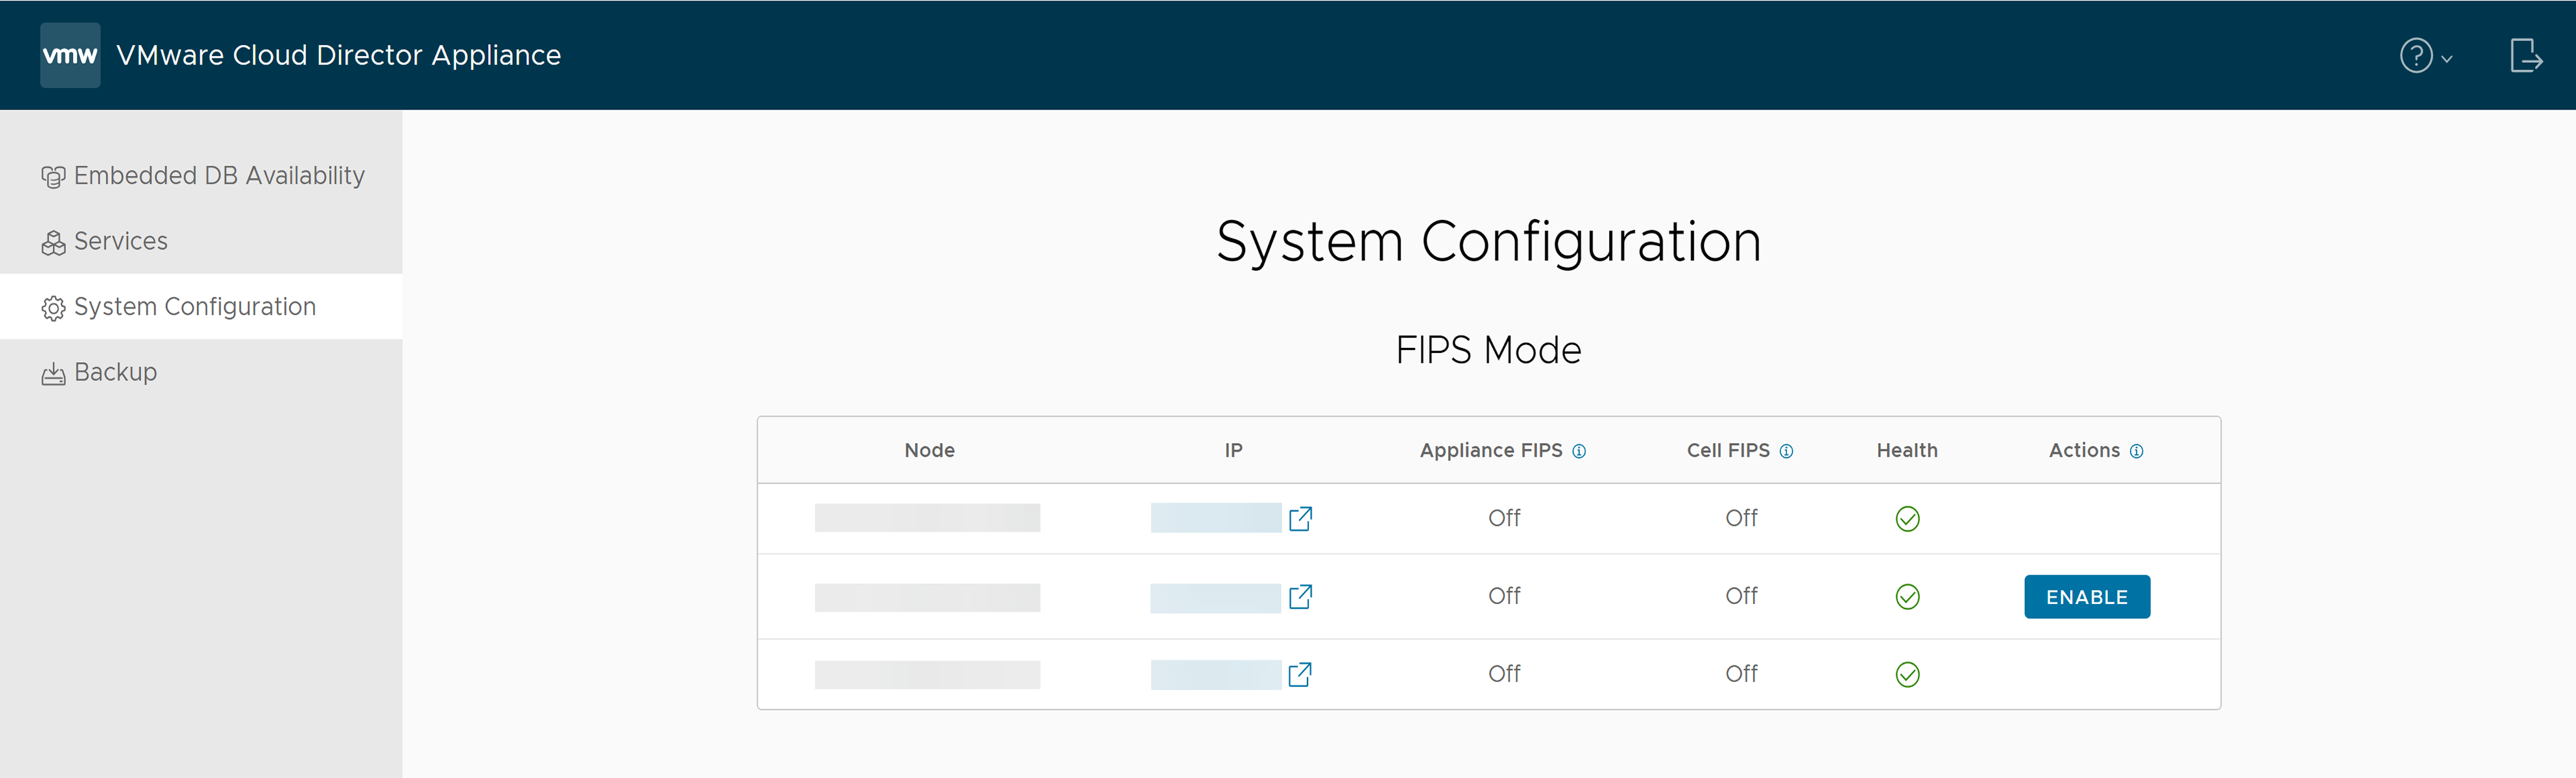 La scheda Configurazione di sistema dell'interfaccia utente di gestione dell'appliance di VMware Cloud Director include informazioni sulla modalità FIPS.